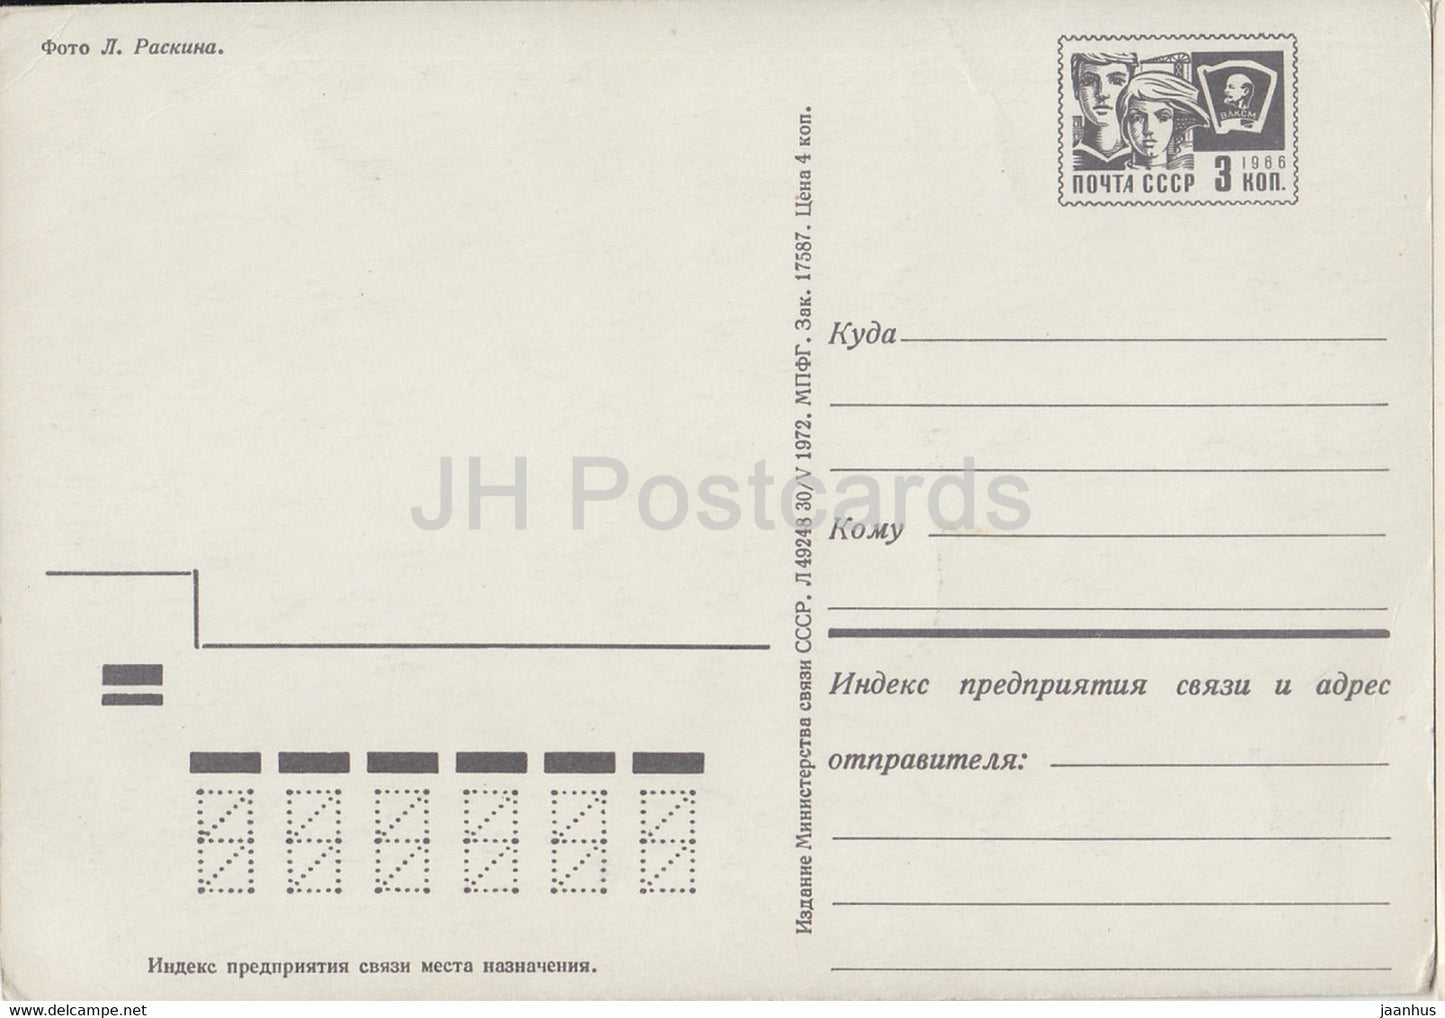 Neujahrsgrußkarte – Moskauer Kreml – Ganzsache – 1972 – Russland UdSSR – unbenutzt